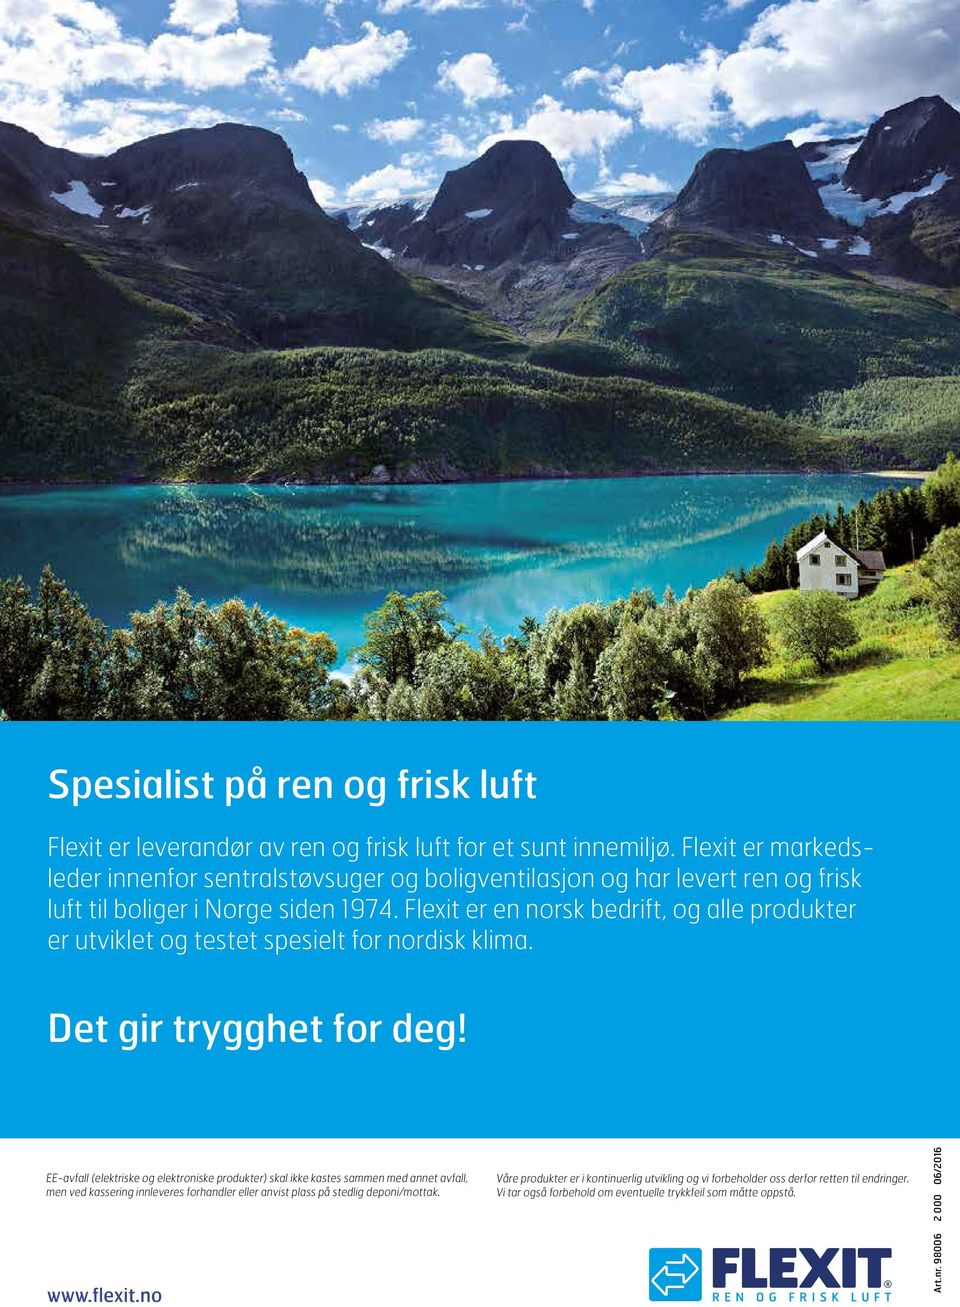 Flexit er en norsk bedrift, og alle produkter er utviklet og testet spesielt for nordisk klima. Det gir trygghet for deg!